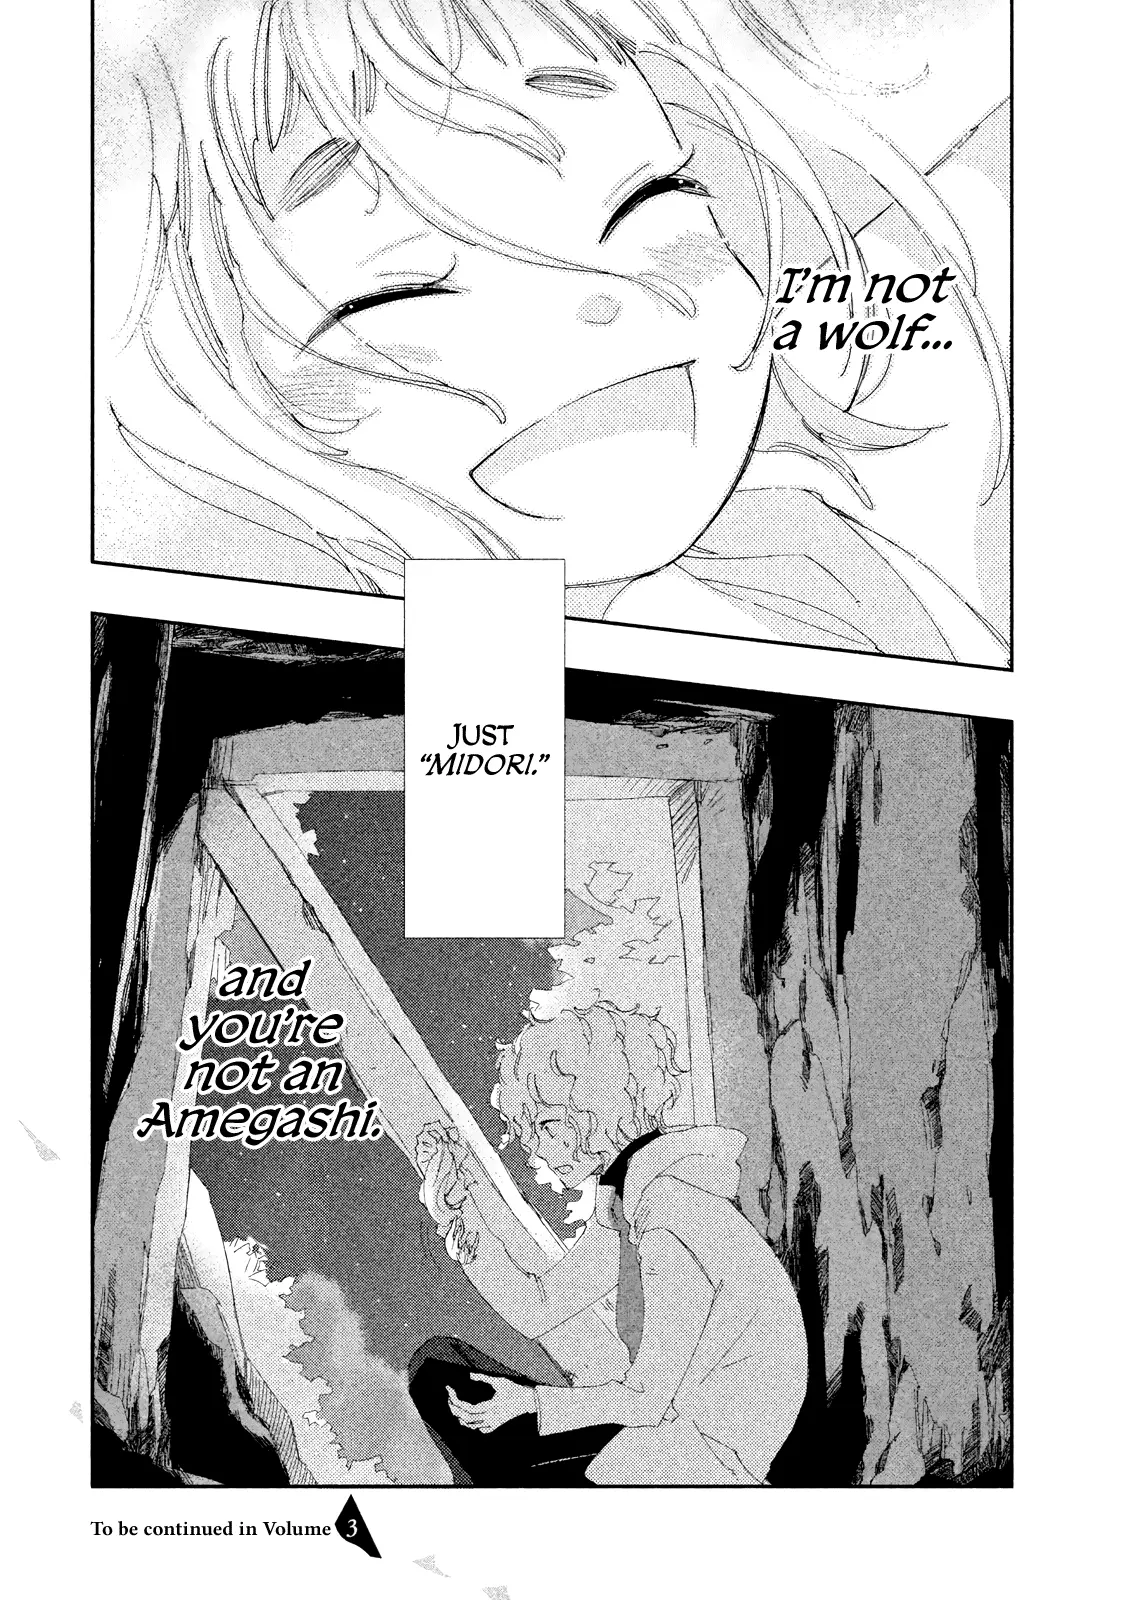 Amegashi - 8 page 39-9fa00949